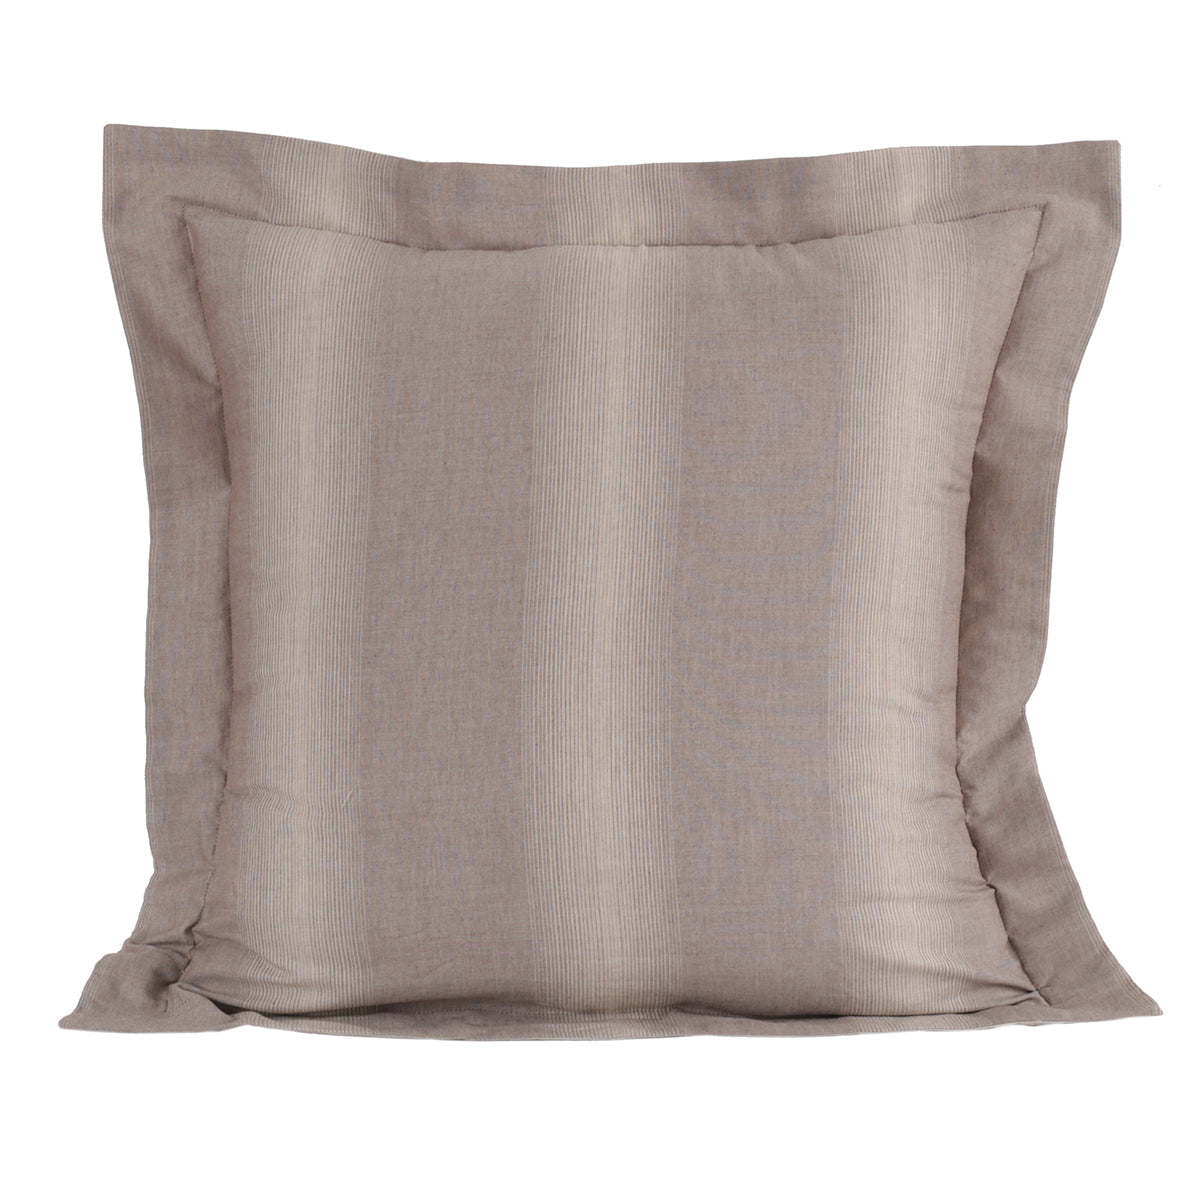 Rhythmic Stripe 100% Natural Egyptian Cotton Woven 2PC Pillow Case Euro Set